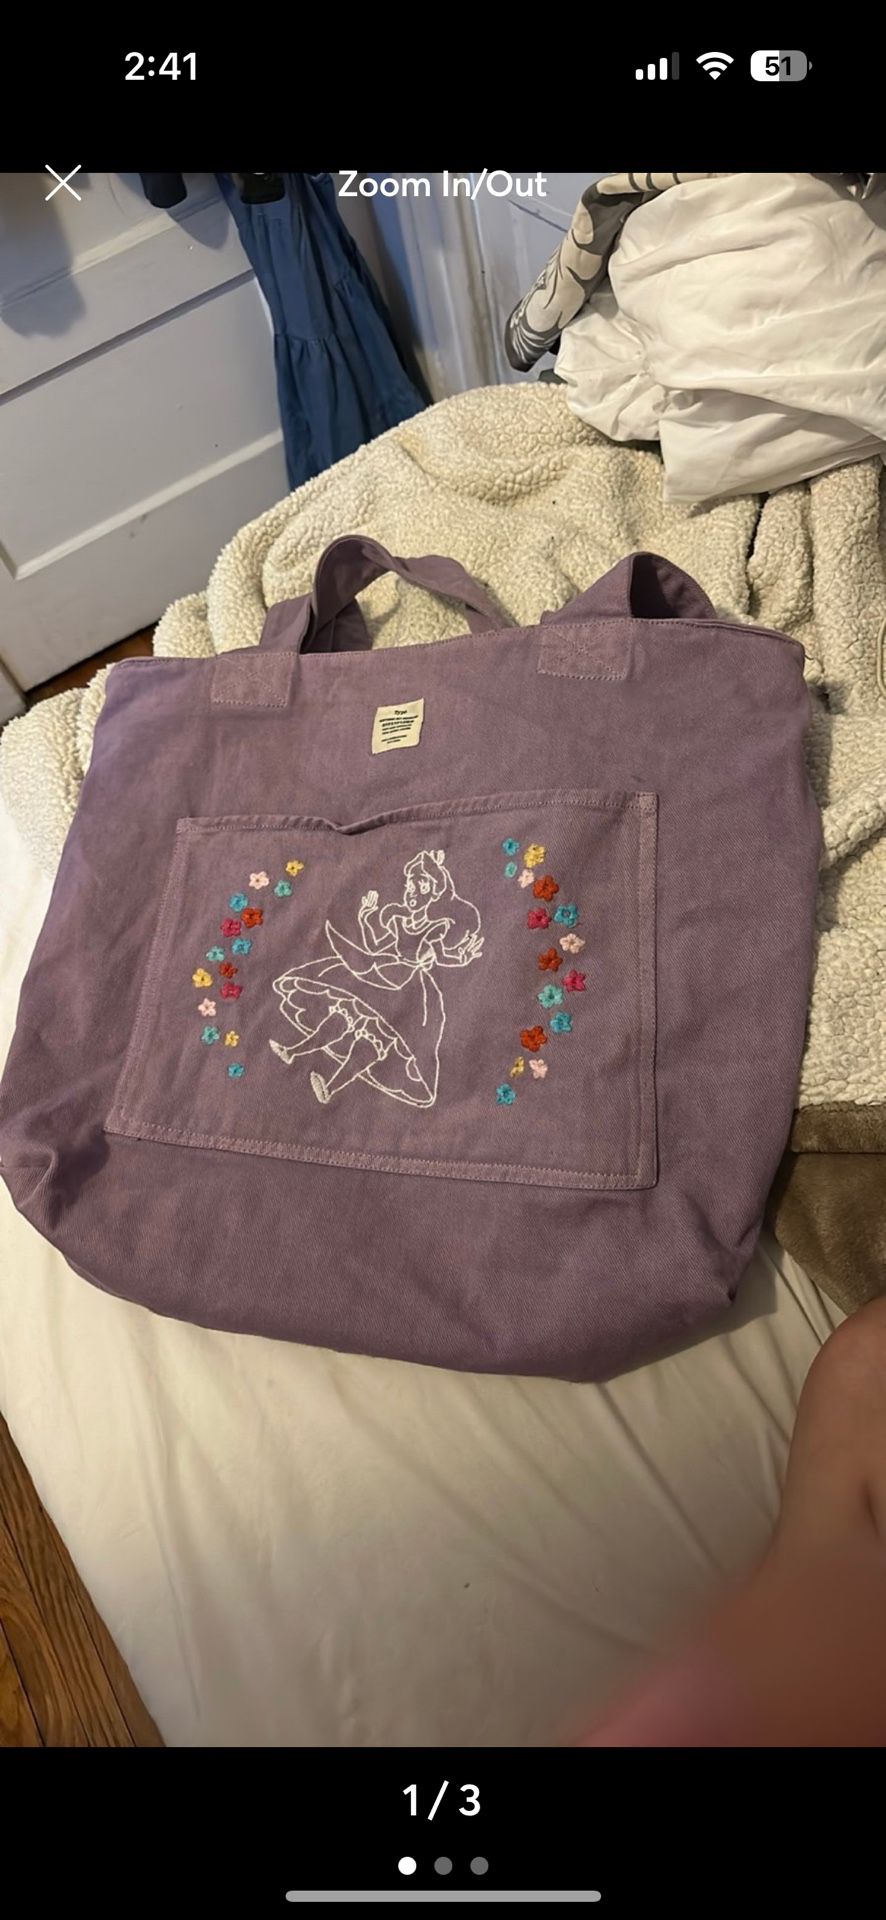 Disney Typo Tote Bag